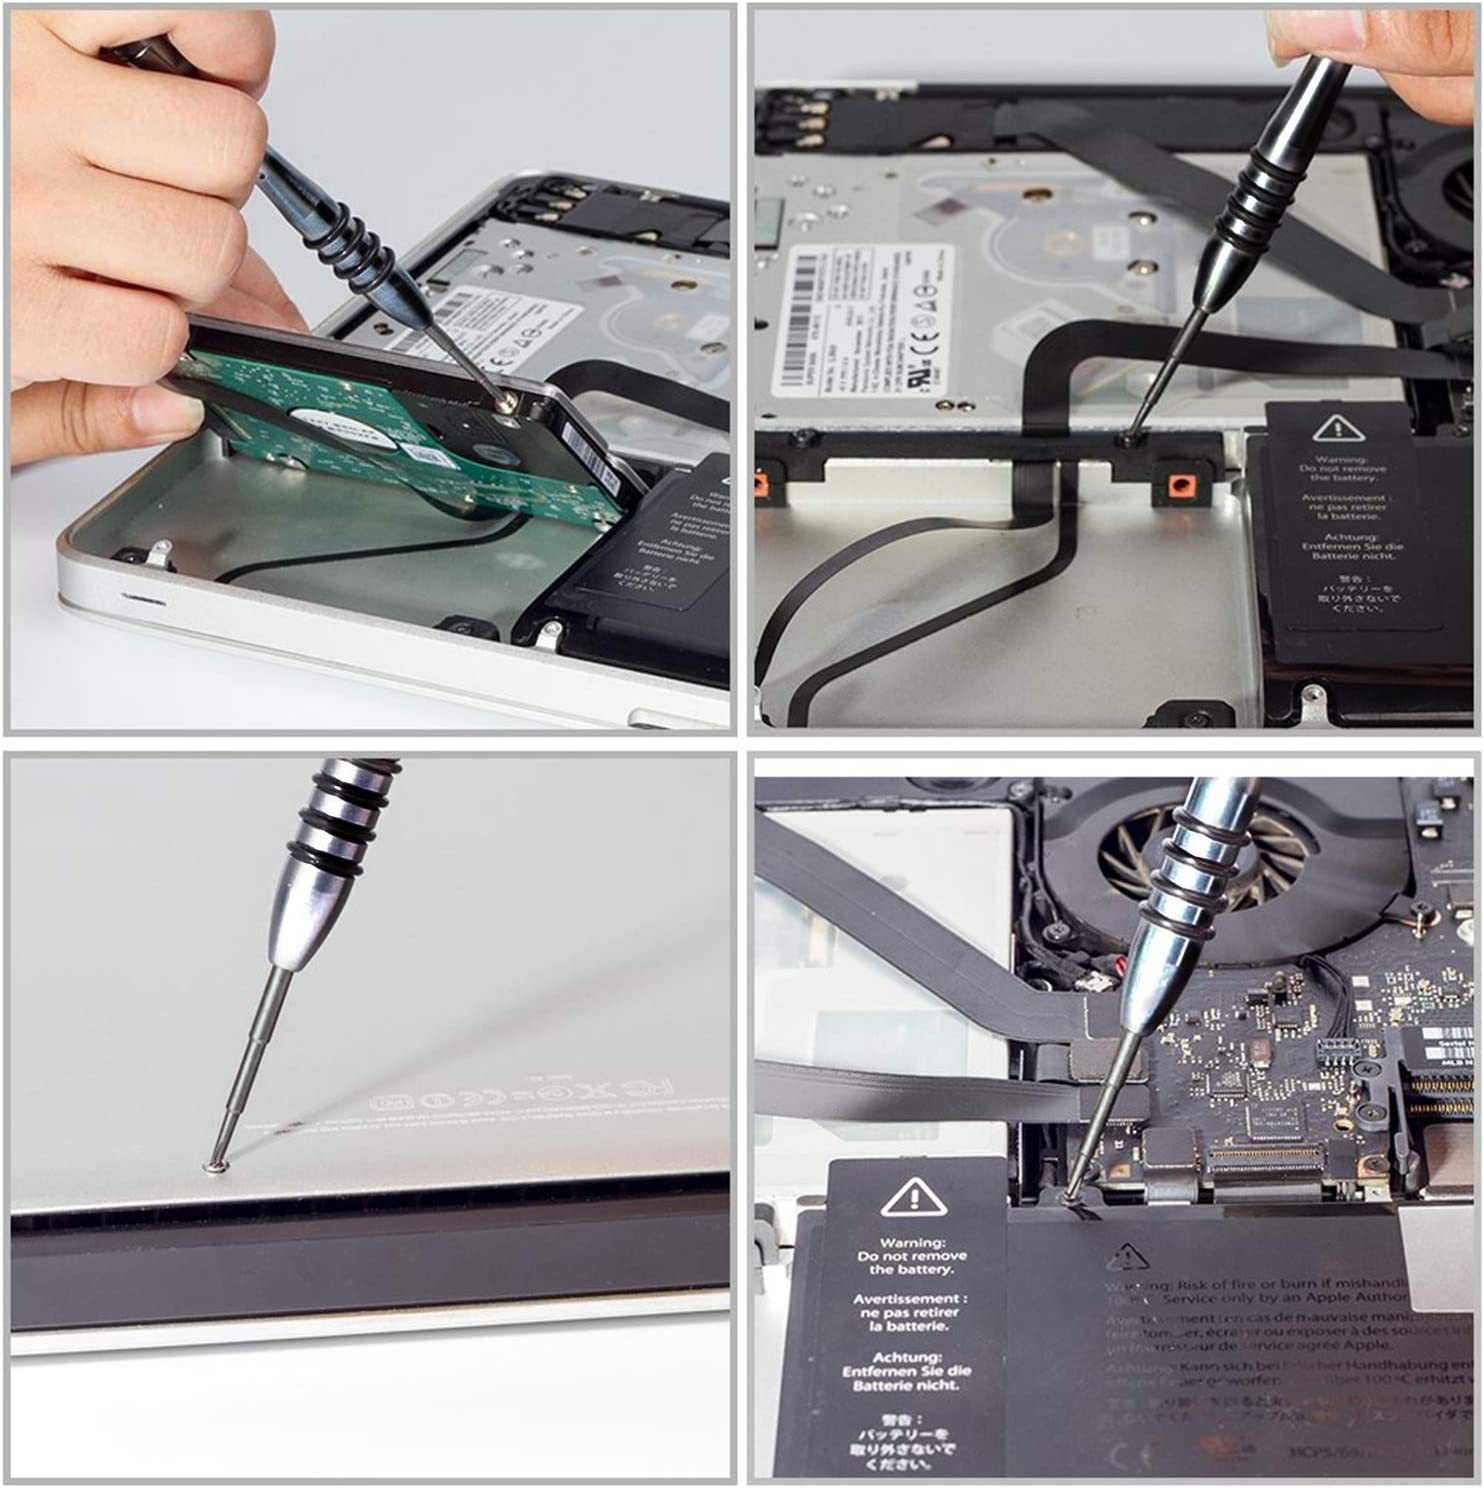 Surubelnita MacBook Pentalobe 1,2 Pentalobe 0,8 Y 0,6 Y 2,0